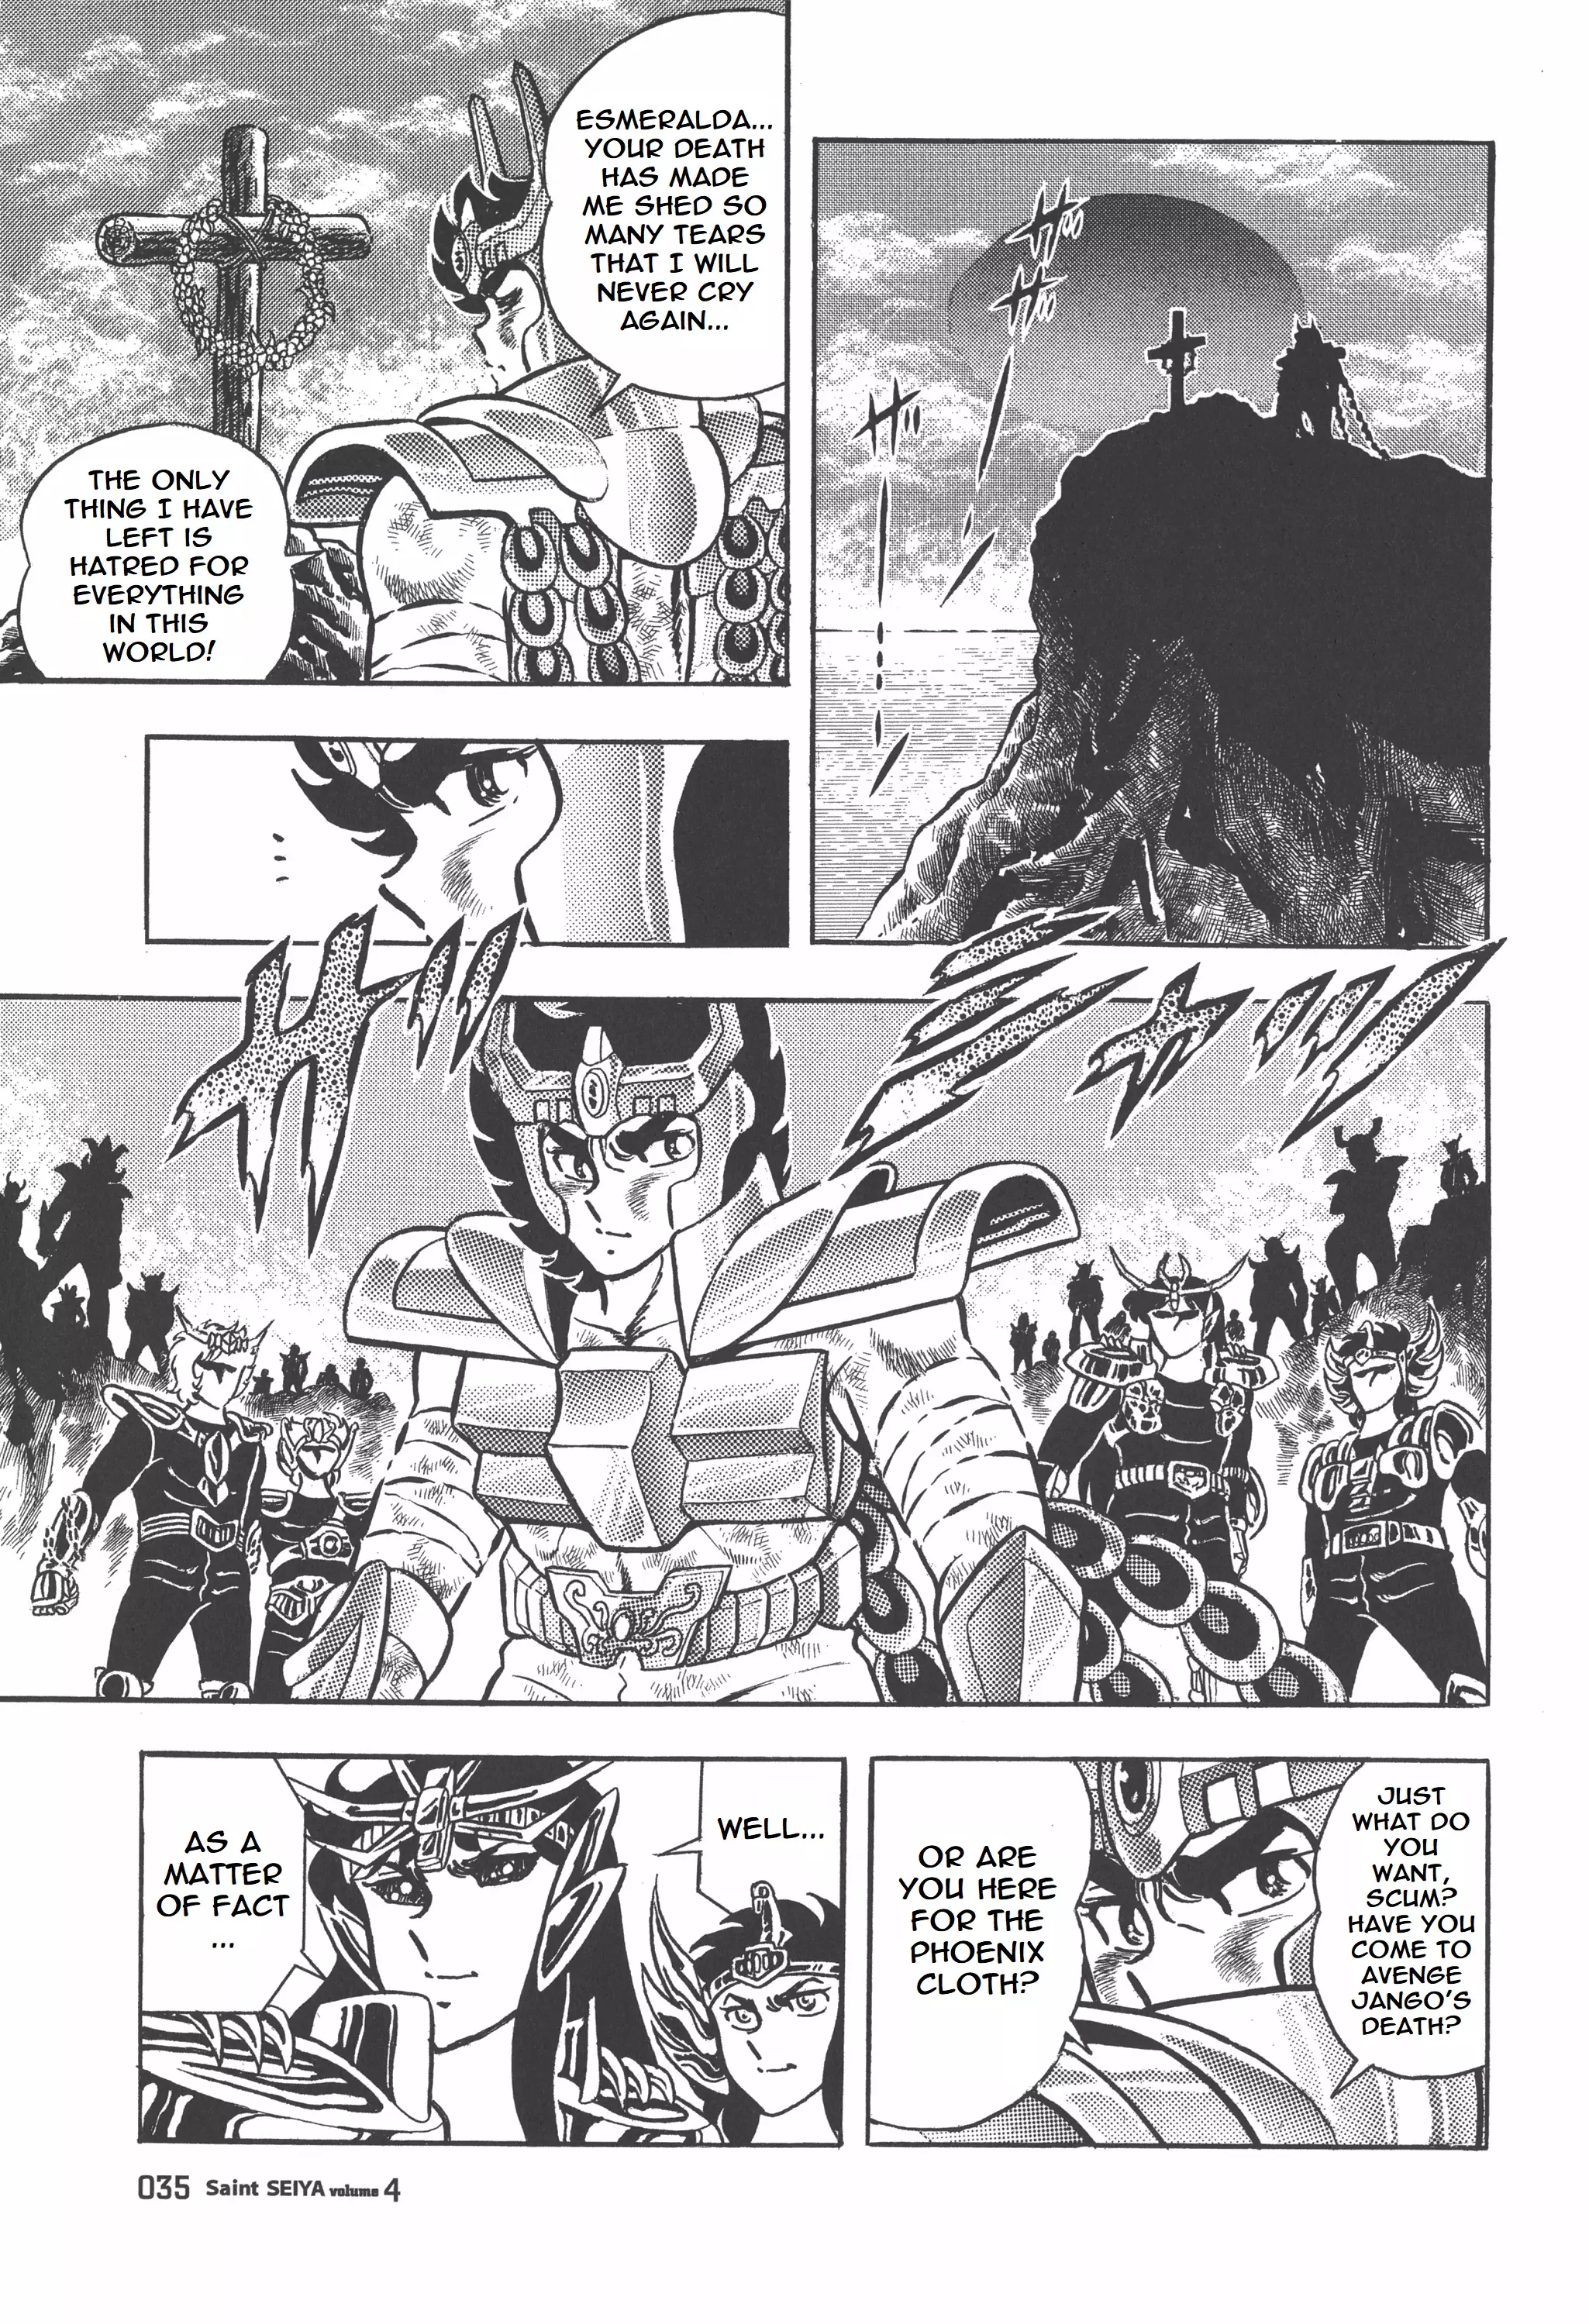 Saint Seiya (Kanzenban Edition) - 18 page 35-0256c16f